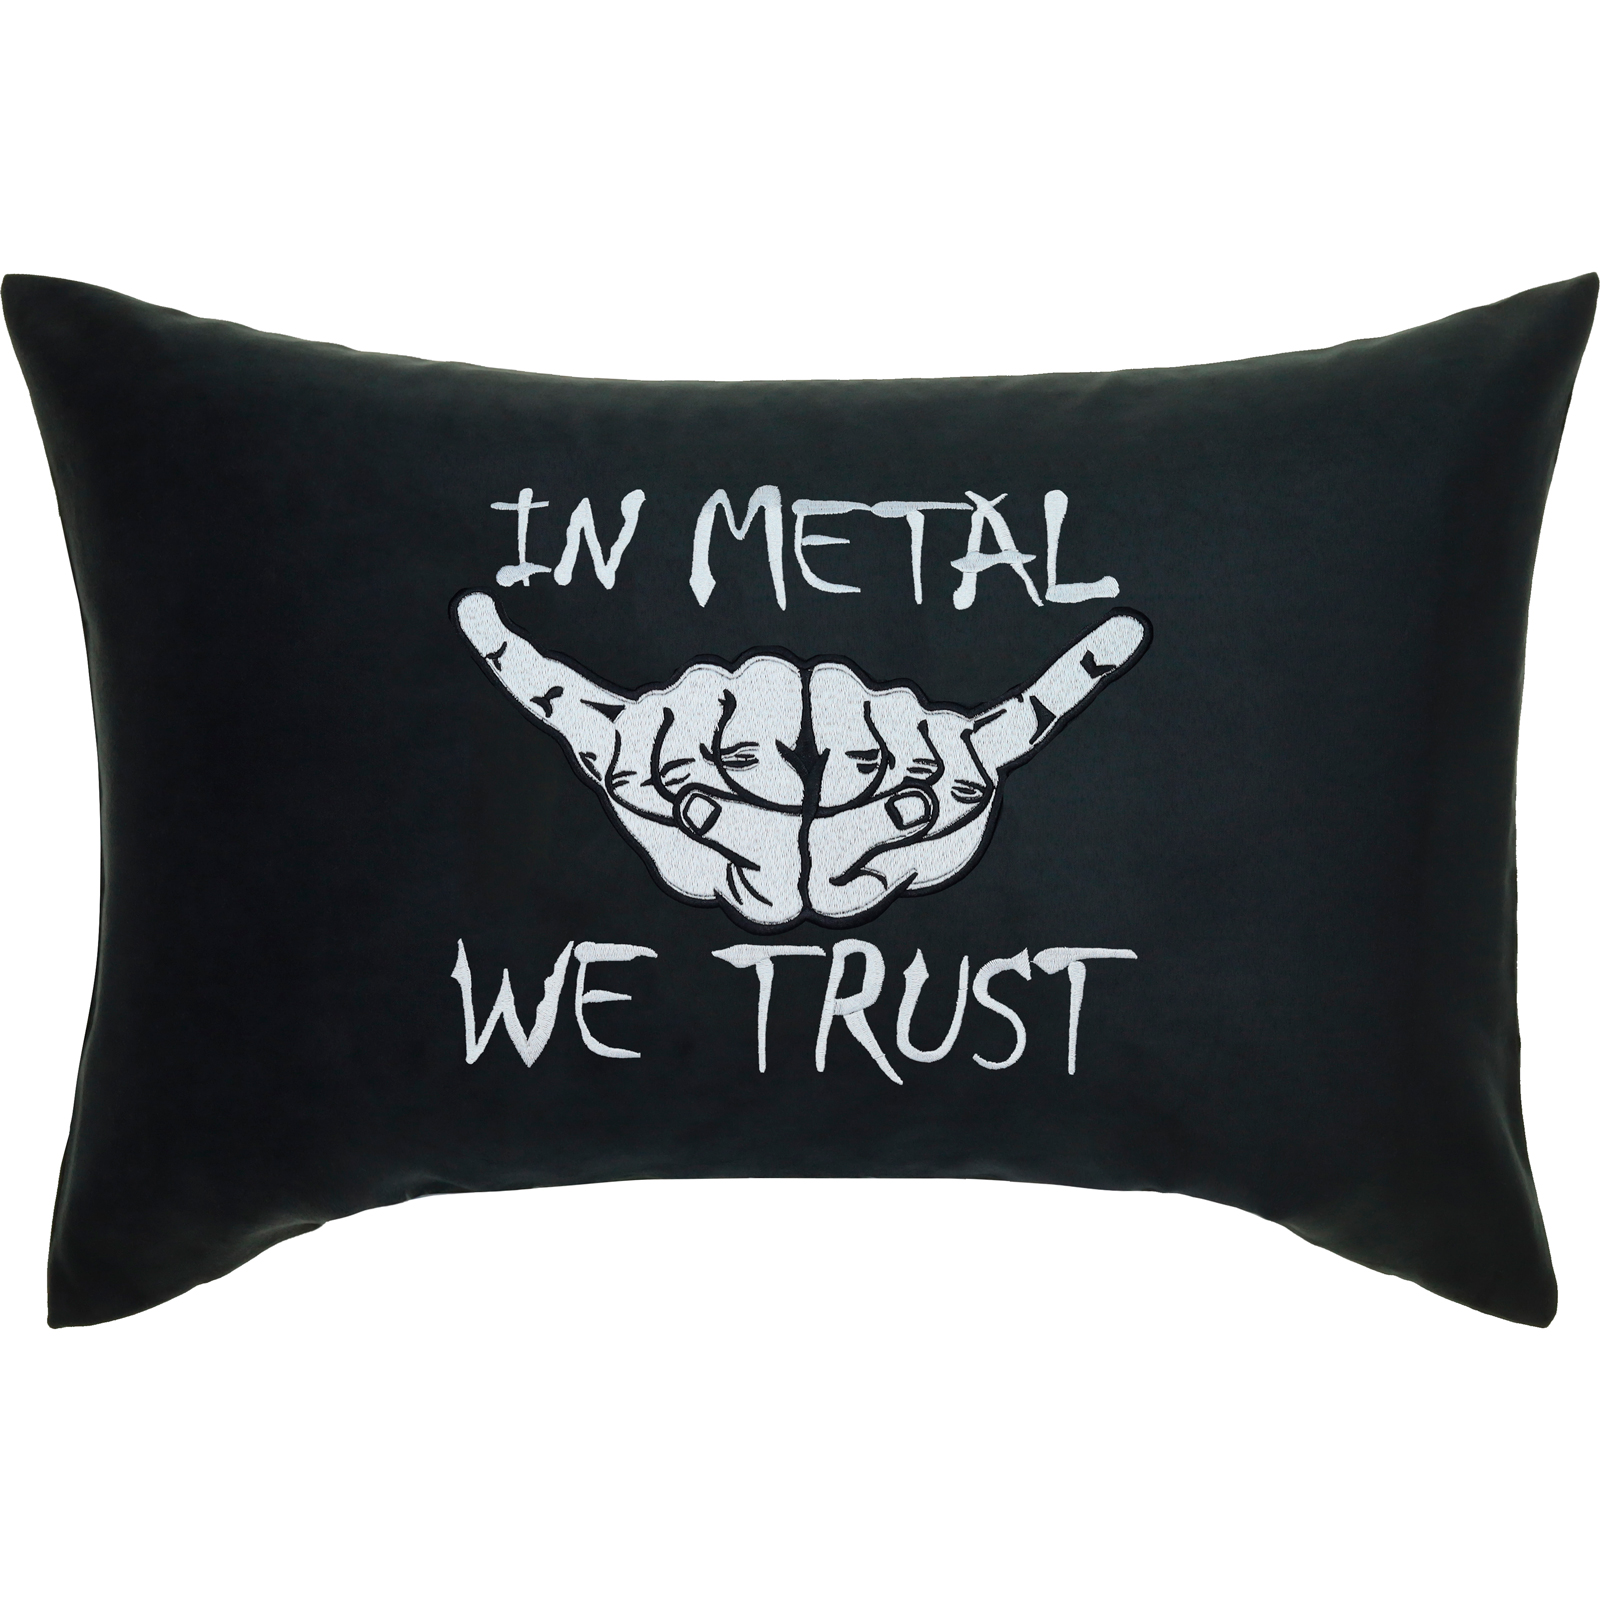 In metal we trust - Kissen